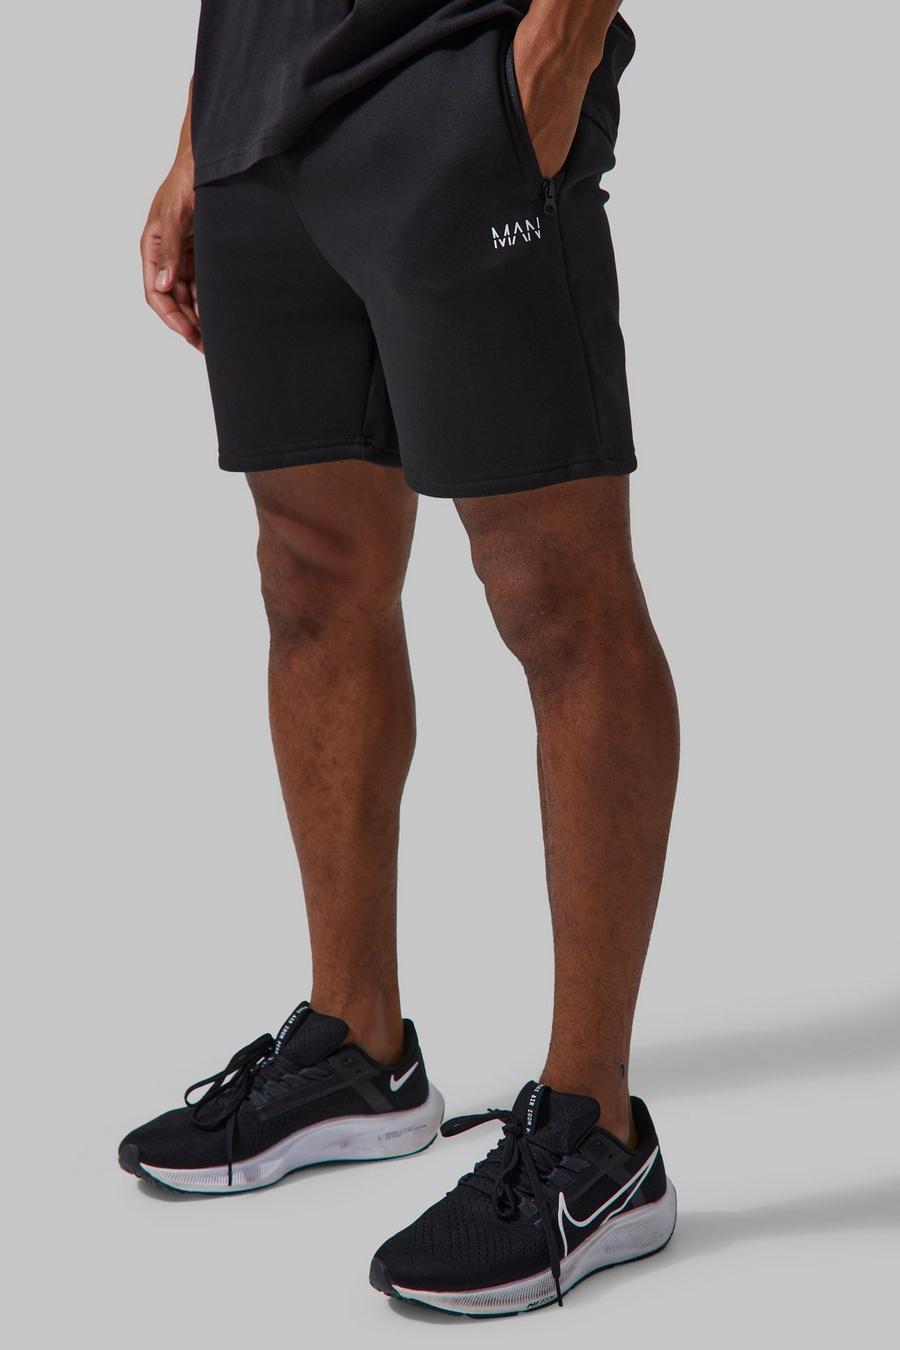 Pantalón corto MAN Active deportivo ajustado al músculo, Black